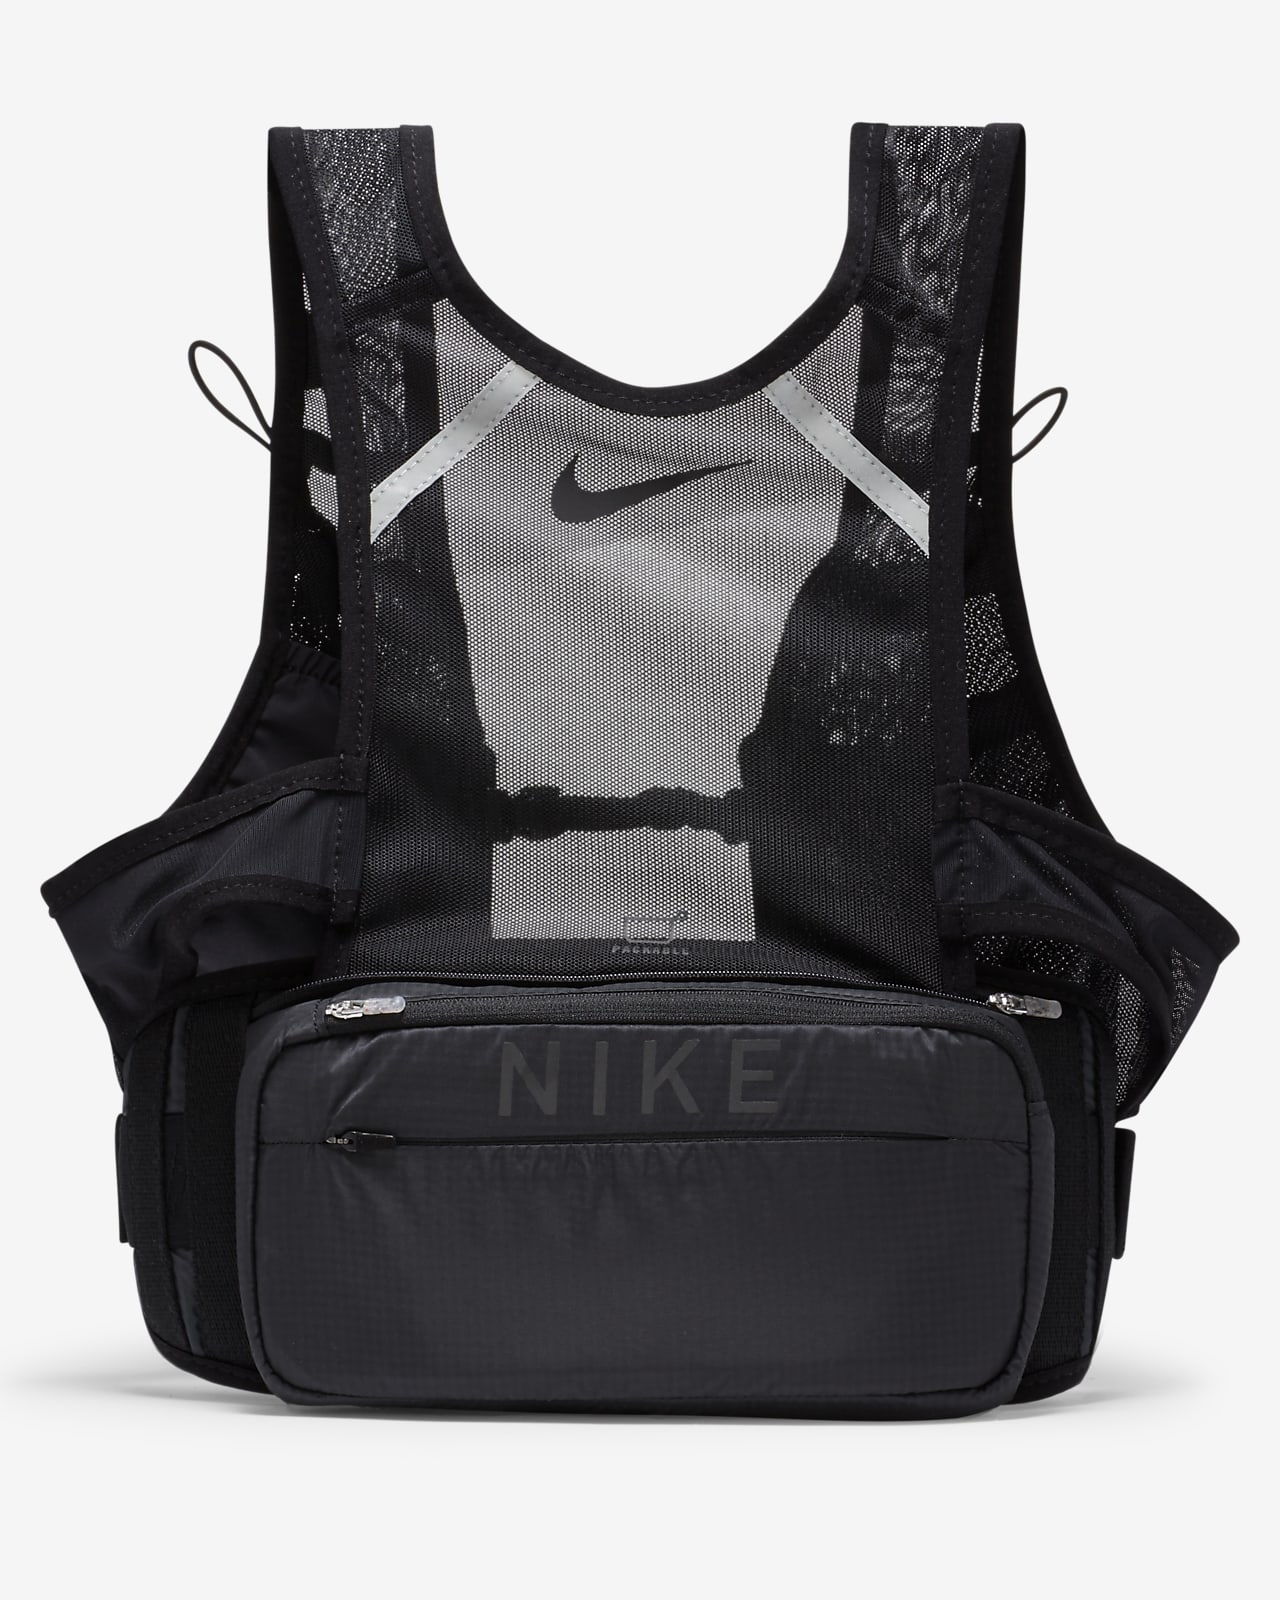 Nike running vest mens